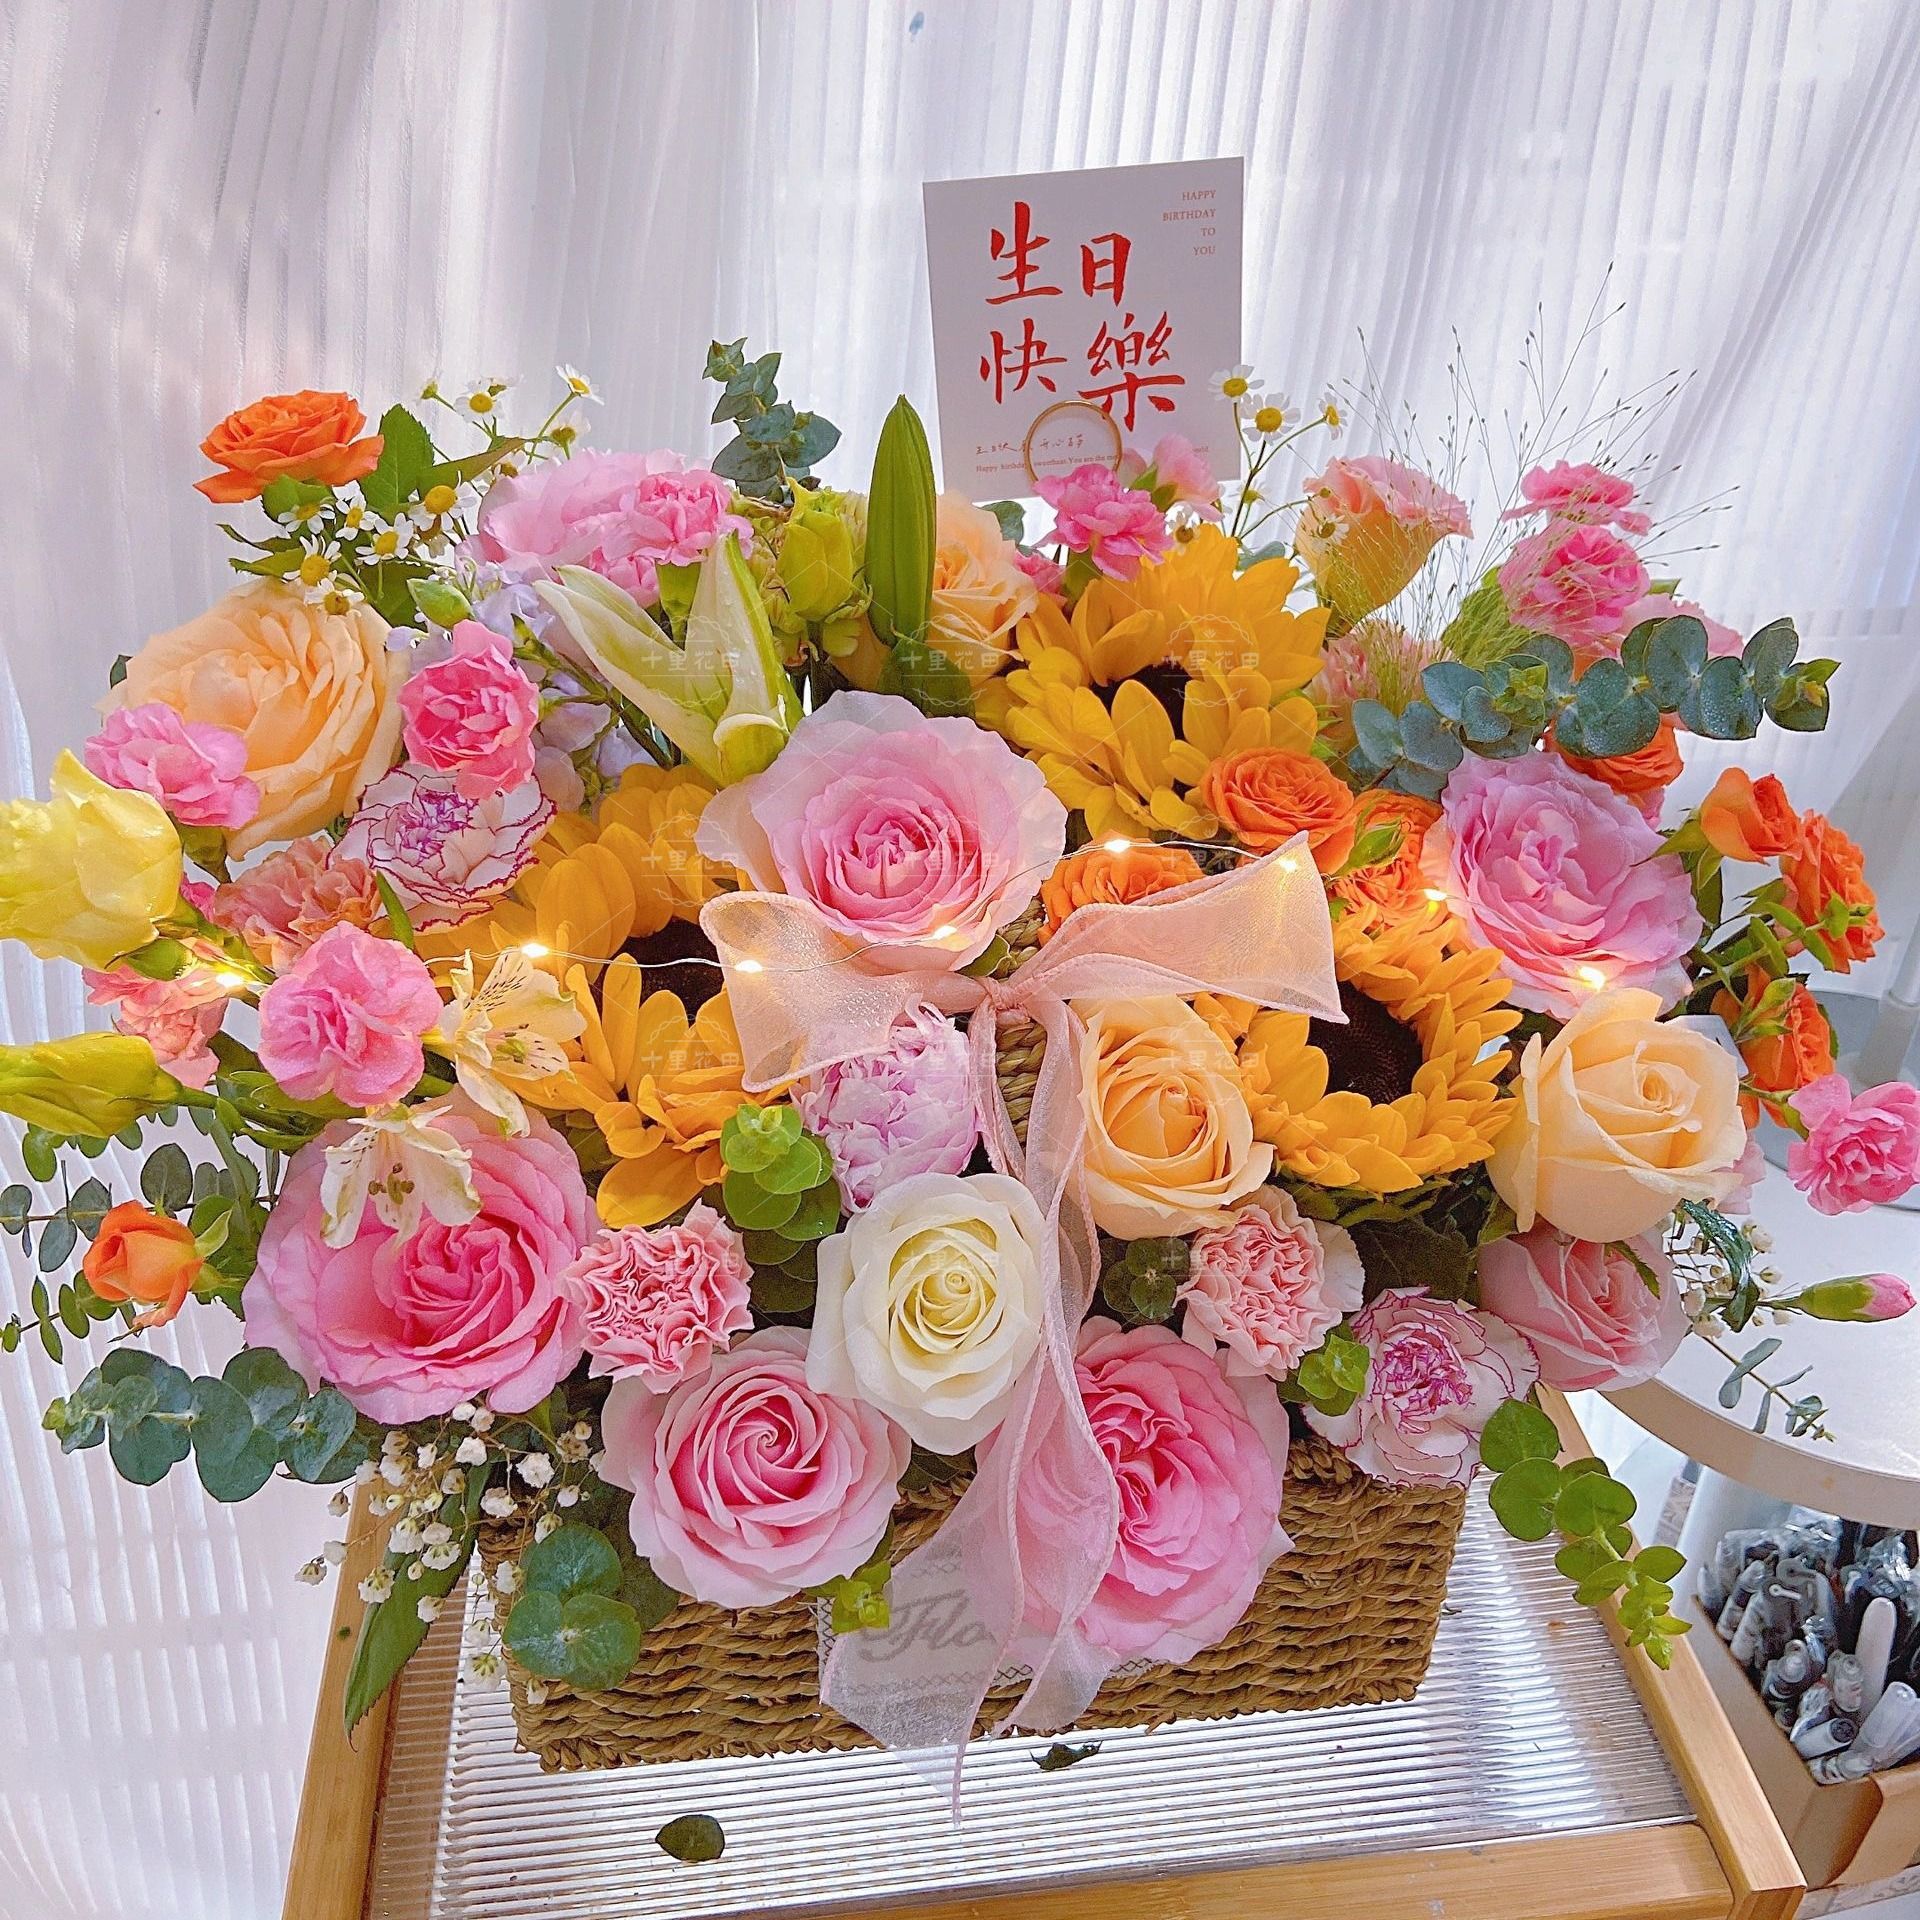 【欣然开朗】3朵向日葵搭配百合玫瑰花粉色系手提花篮生日鲜花生日礼物送女友花店送花上门